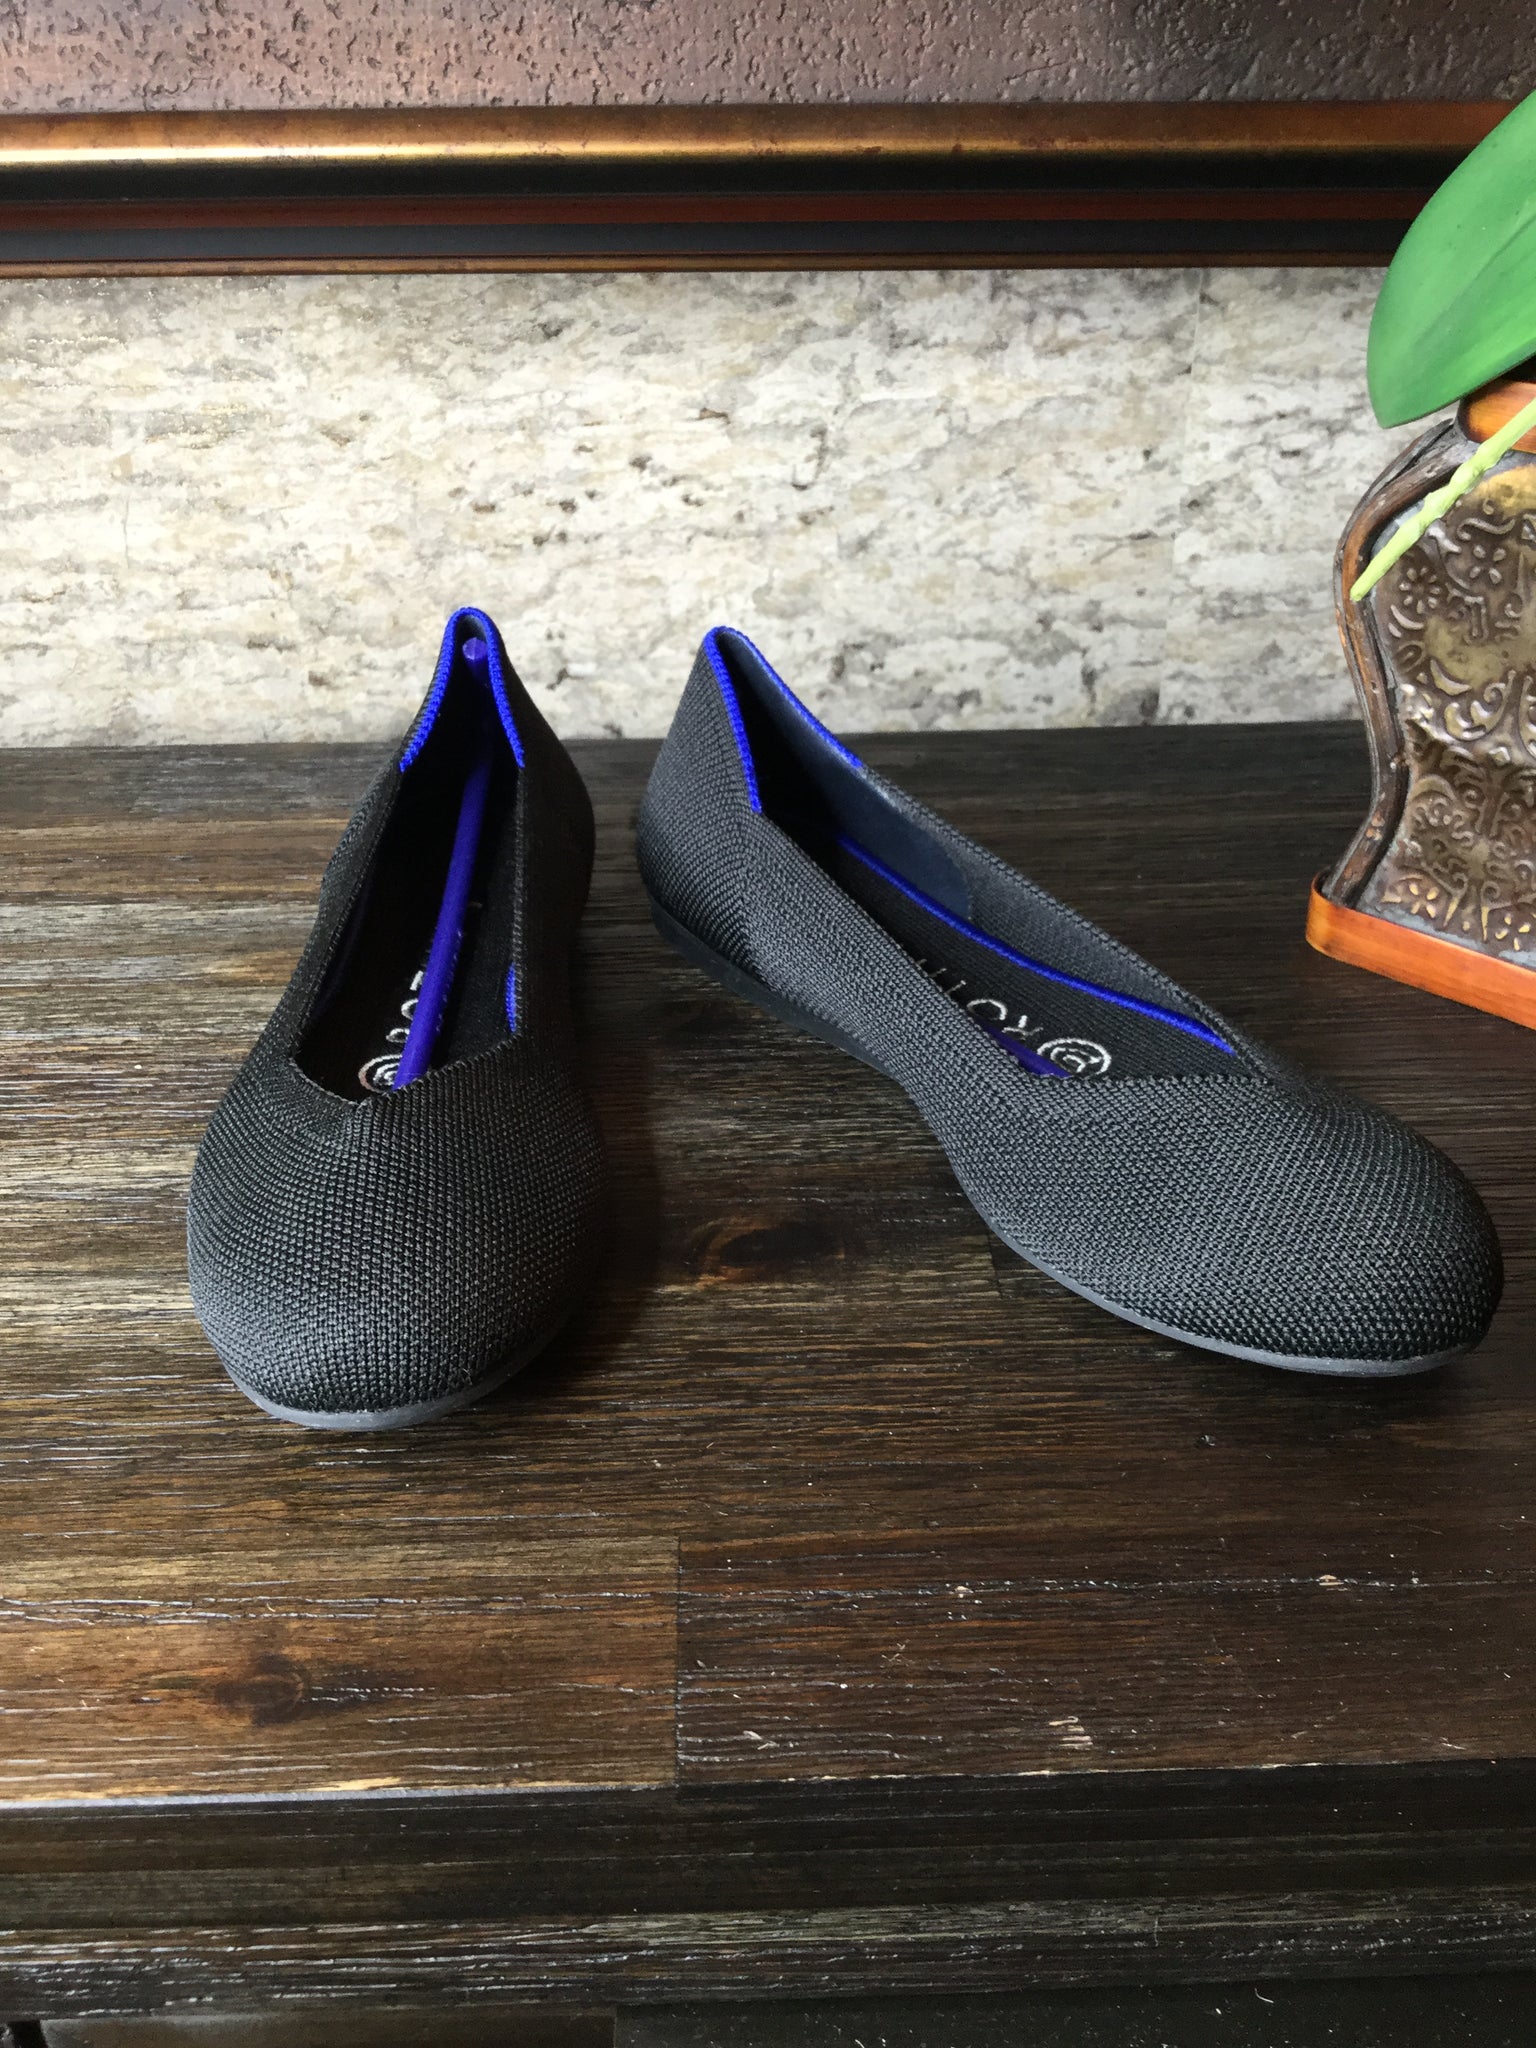 New black comfort flat shoes